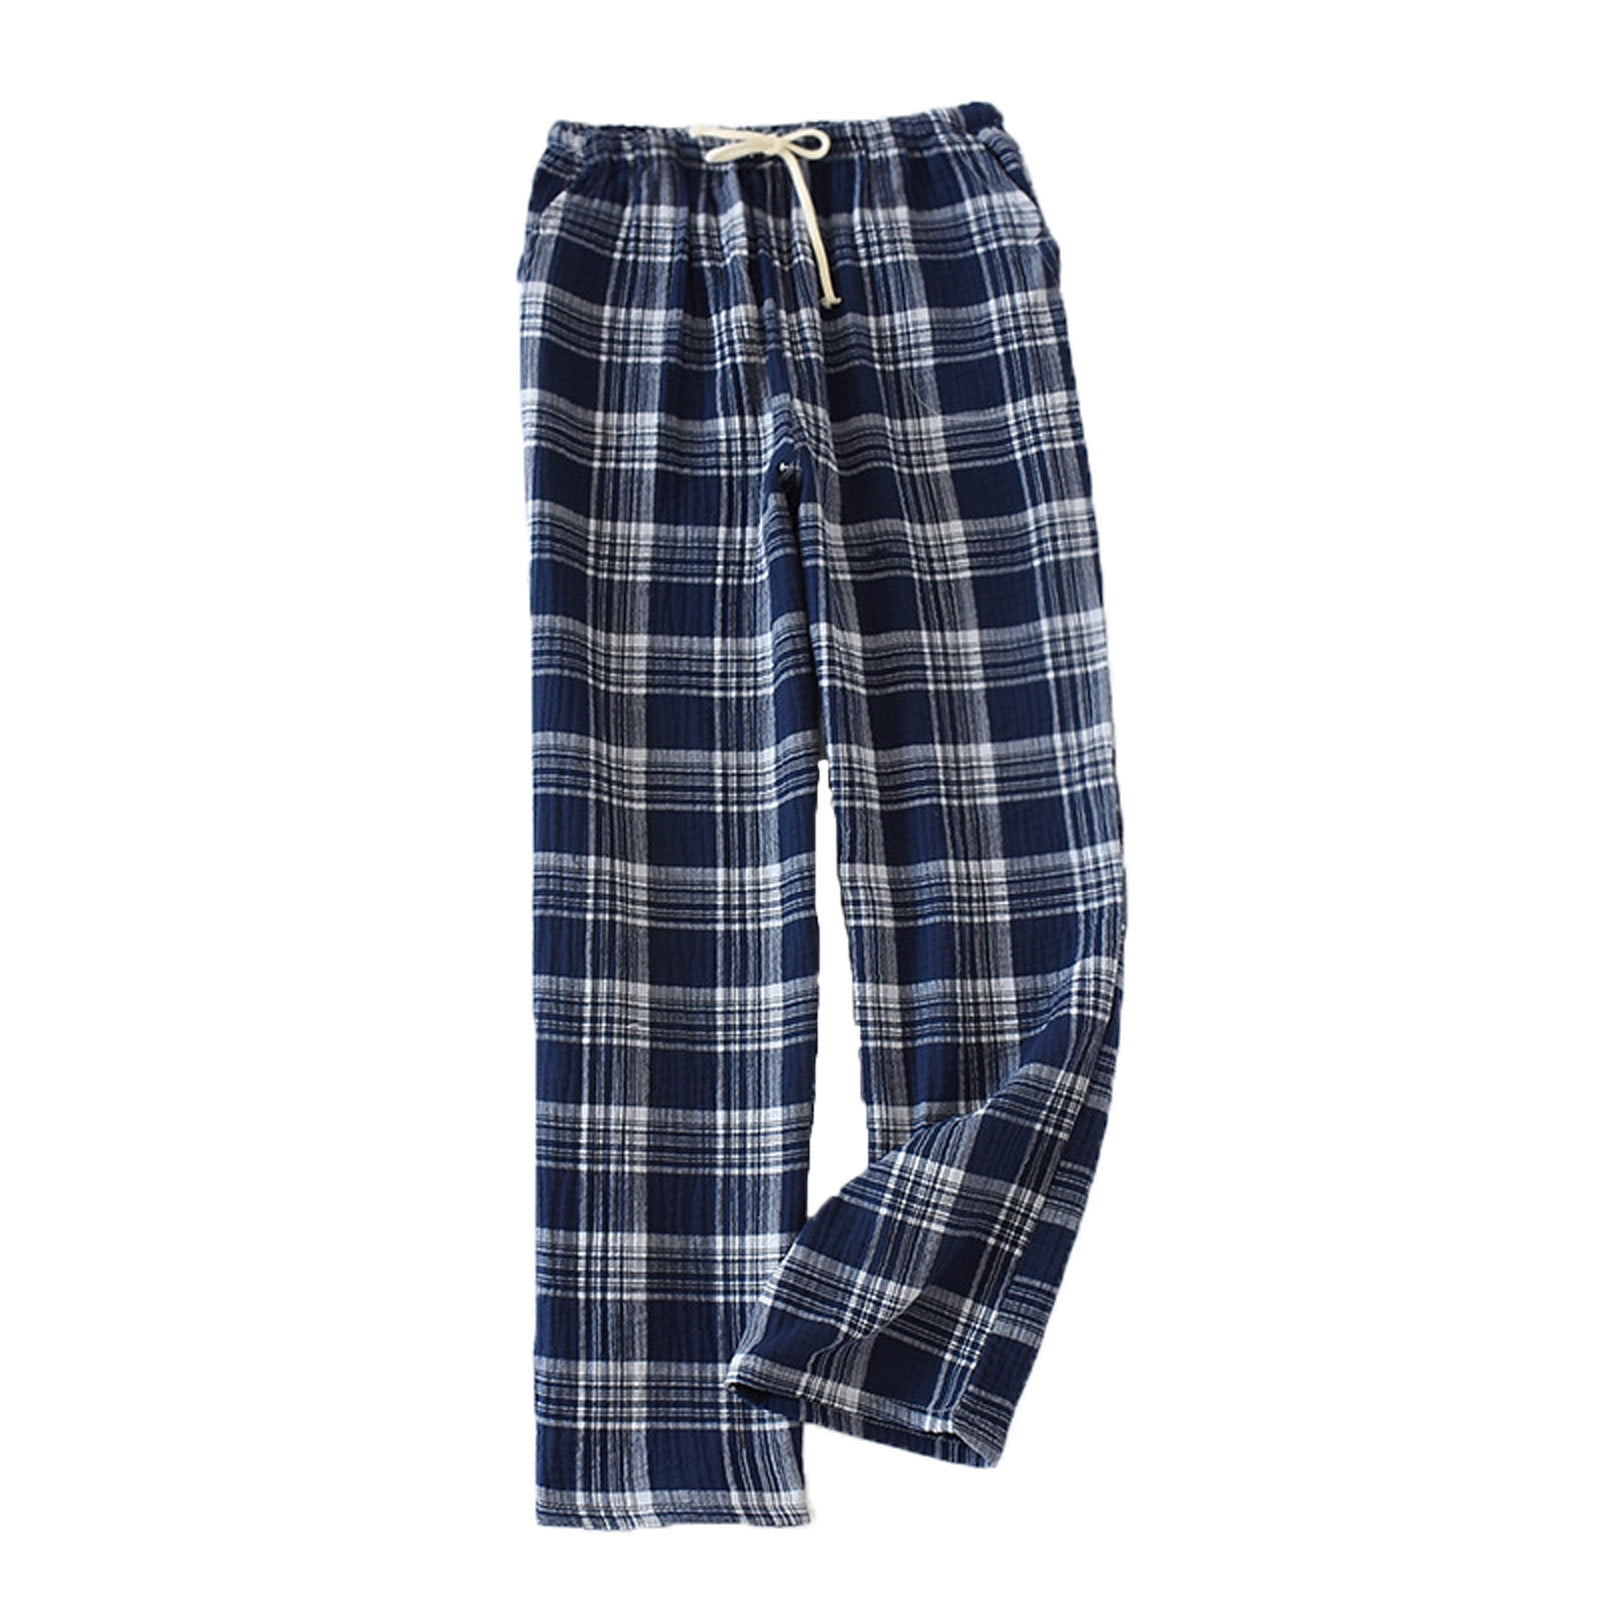 DxhmoneyHX Clearance Men's Pajama Pants Cotton Flannel Plaid Lounge ...